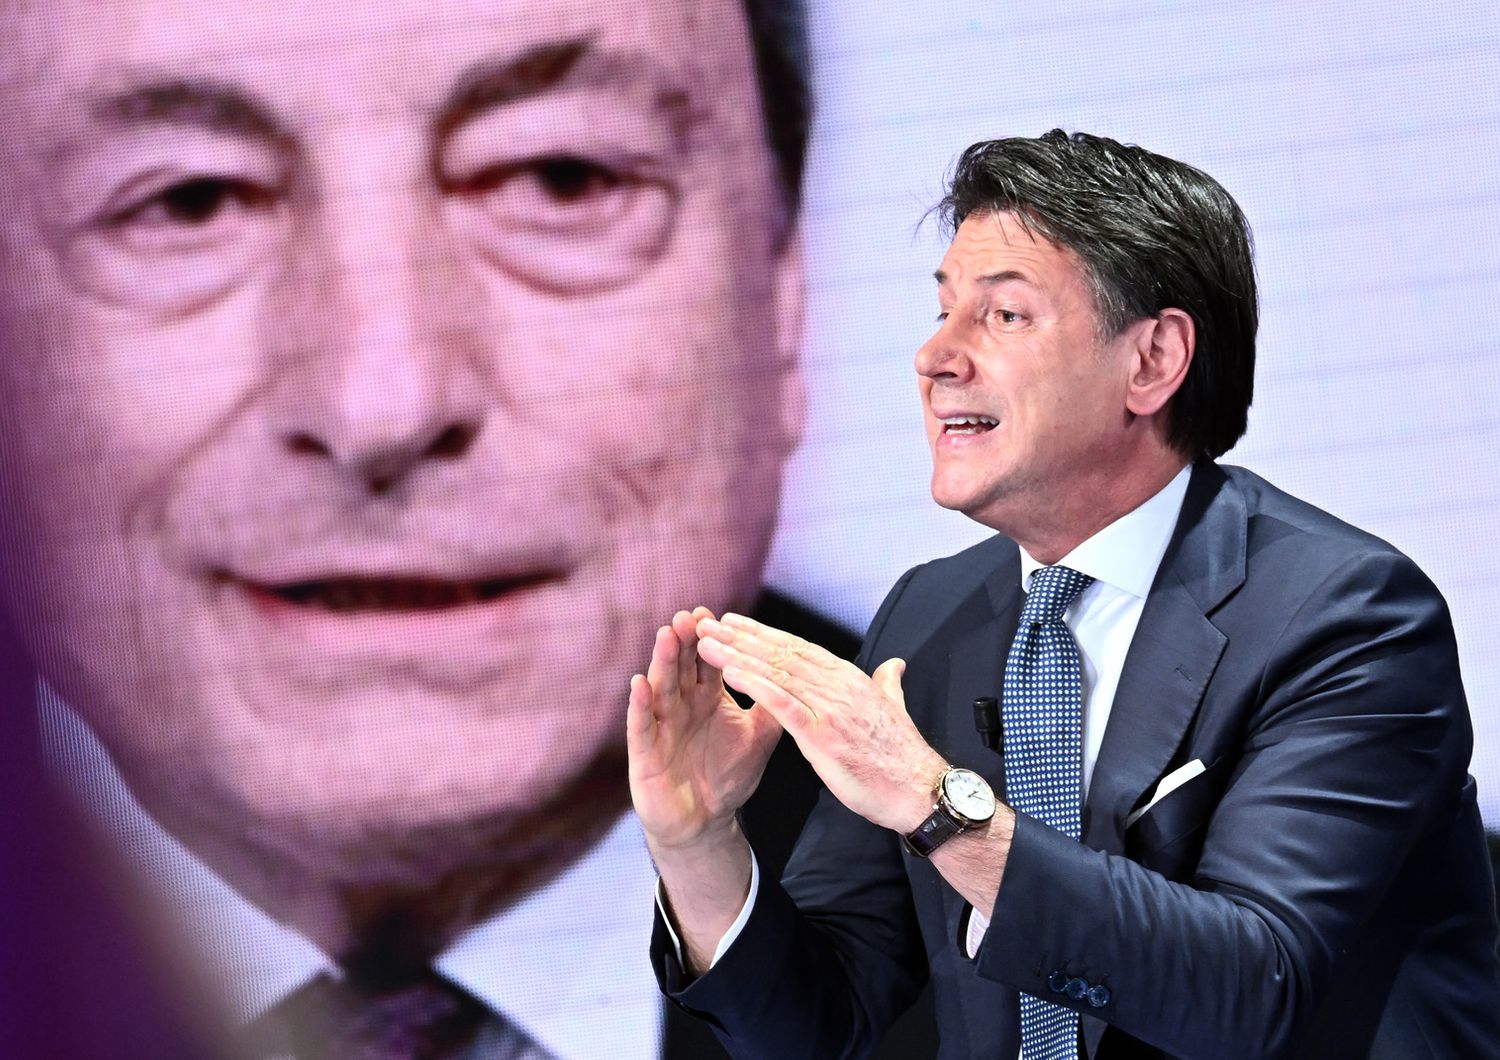 Mario Draghi, Giuseppe Conte